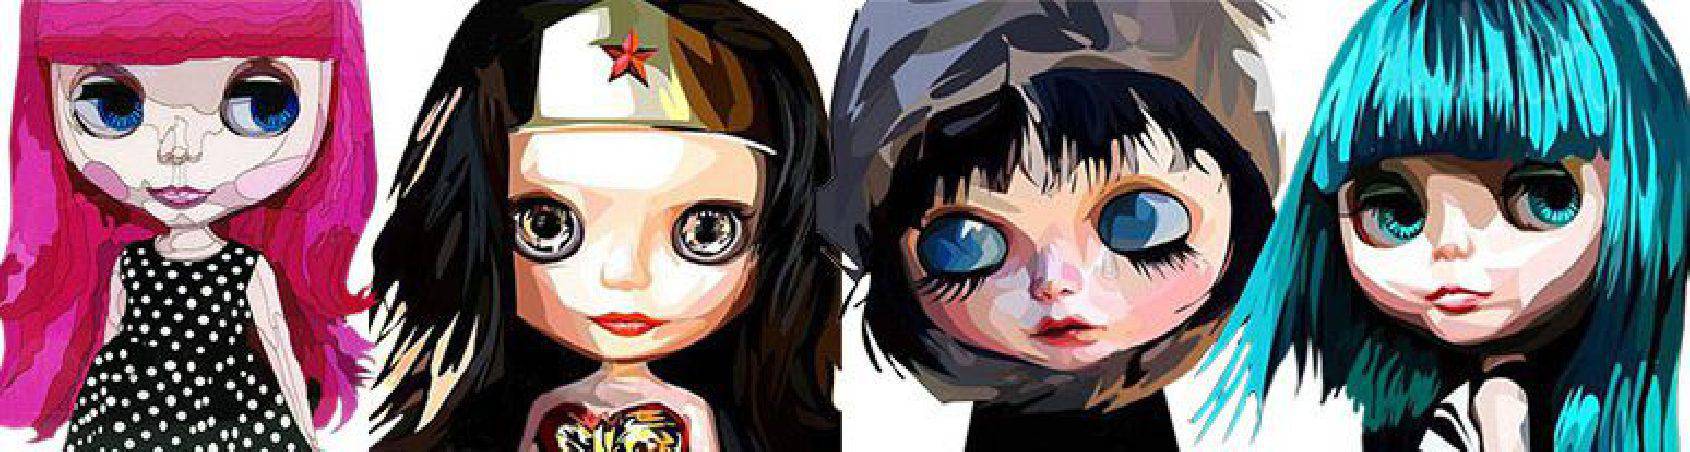 Blythe - muñecas | imágenes para decorar estilo Pop-Art